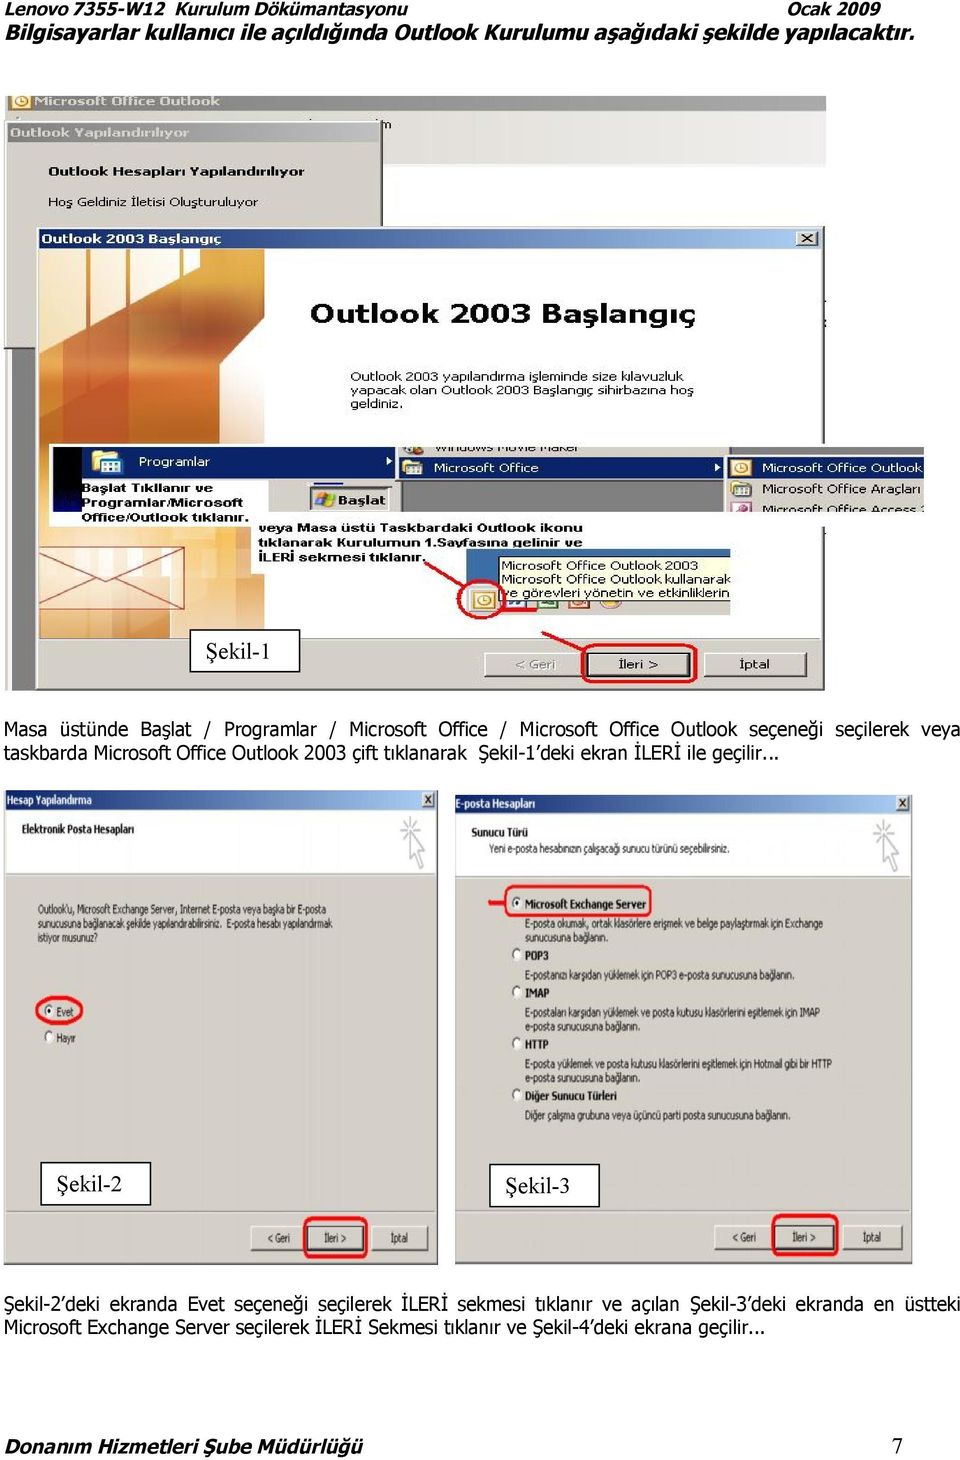 Outlook 2003 çift tıklanarak Şekil-1 deki ekran İLERİ ile geçilir.